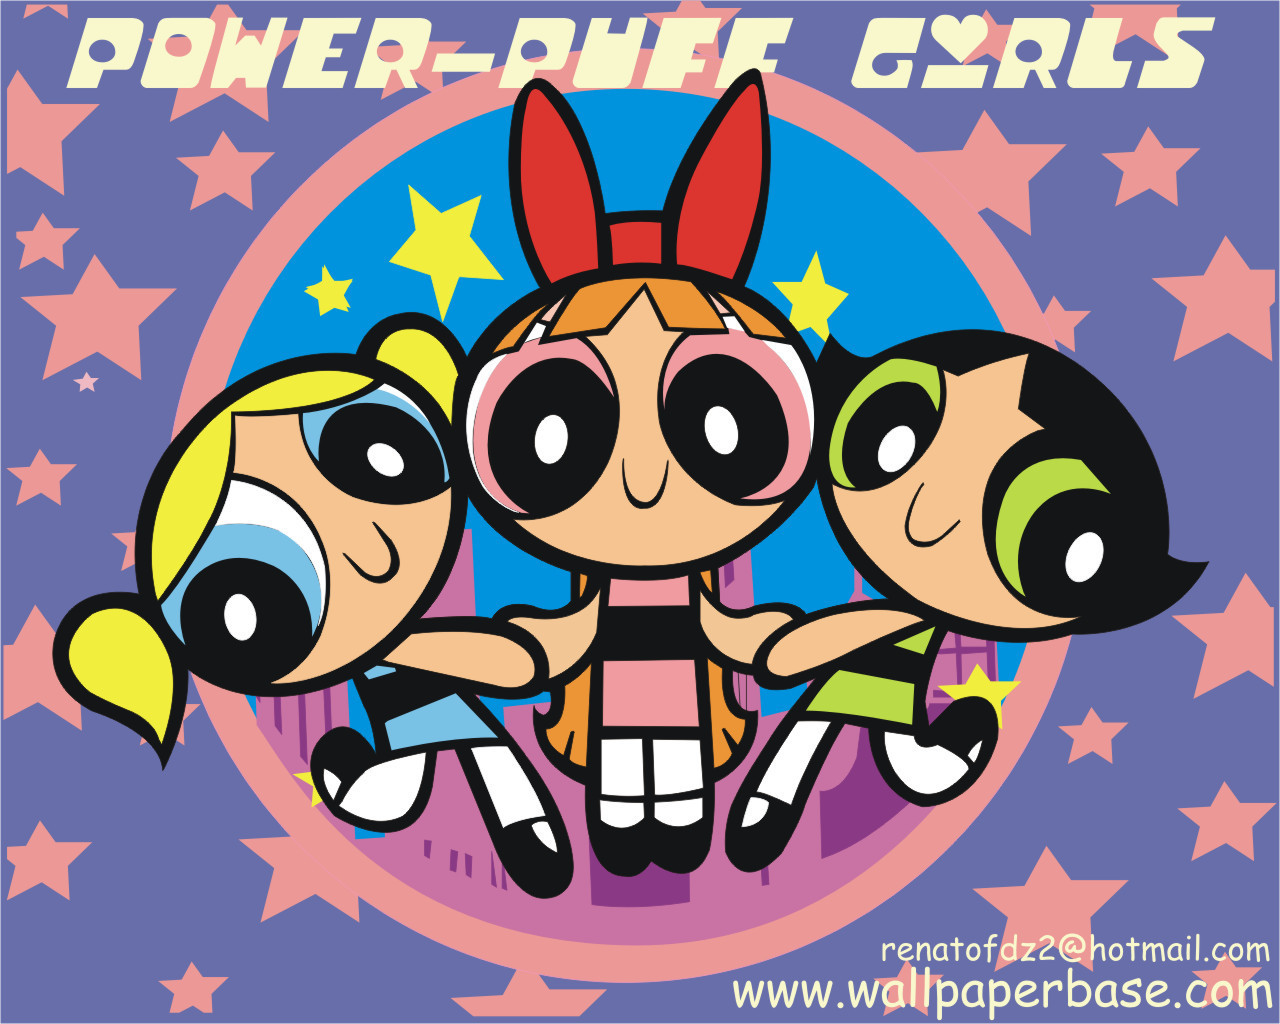 Powerpuff girls